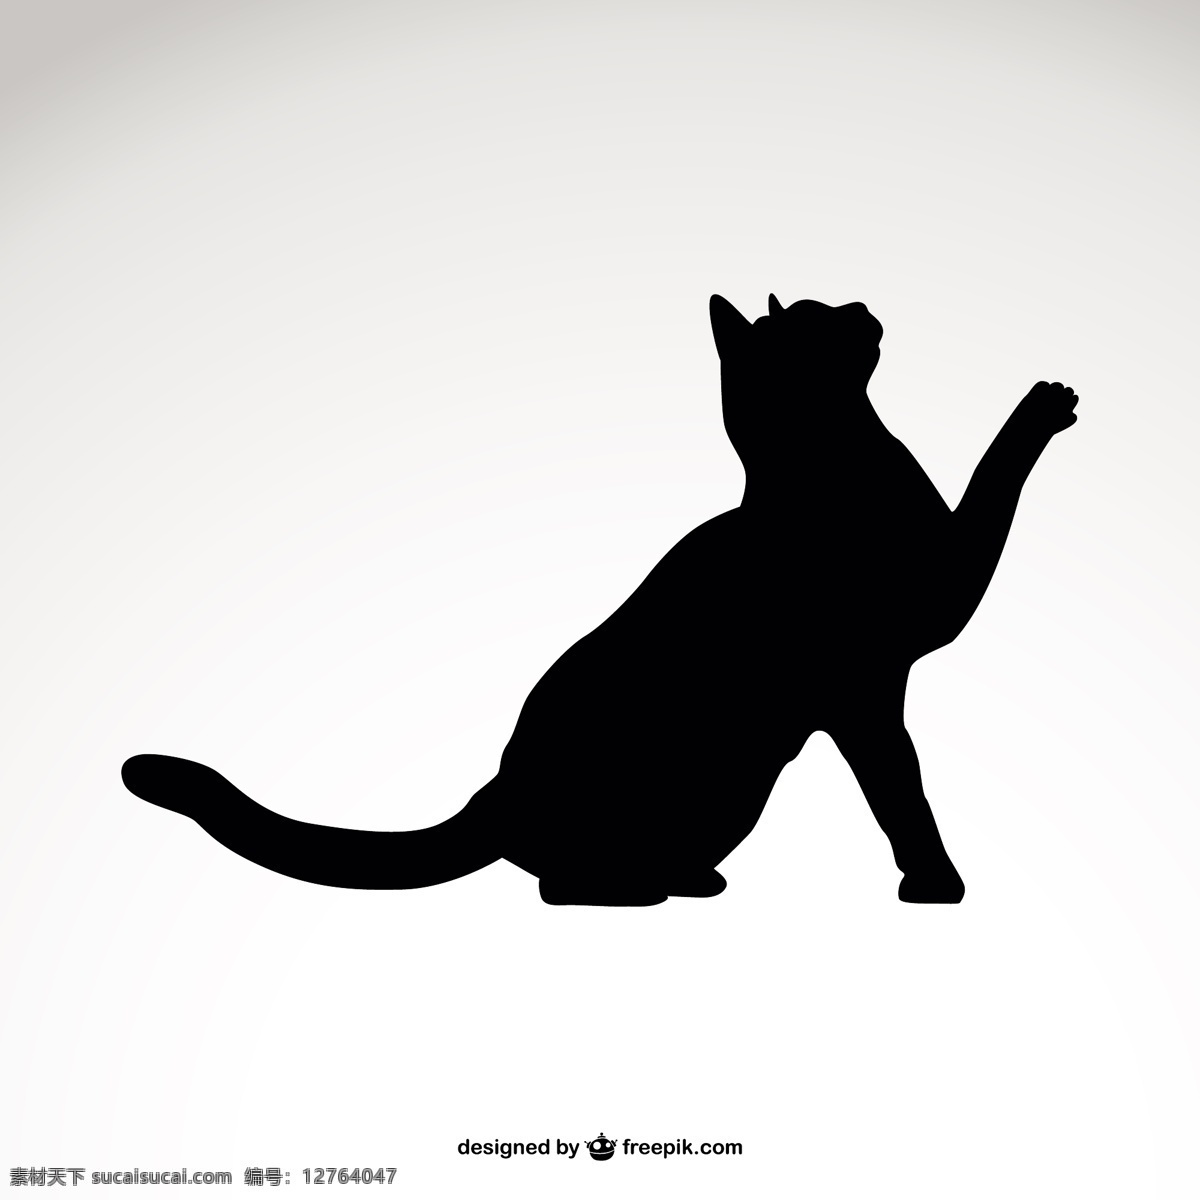 黑猫的剪影 模板 猫 动物 图形 轮廓 布局 符号 图形设计 黑色 宠物 形状 插图 设计元素 简单 元素 白色